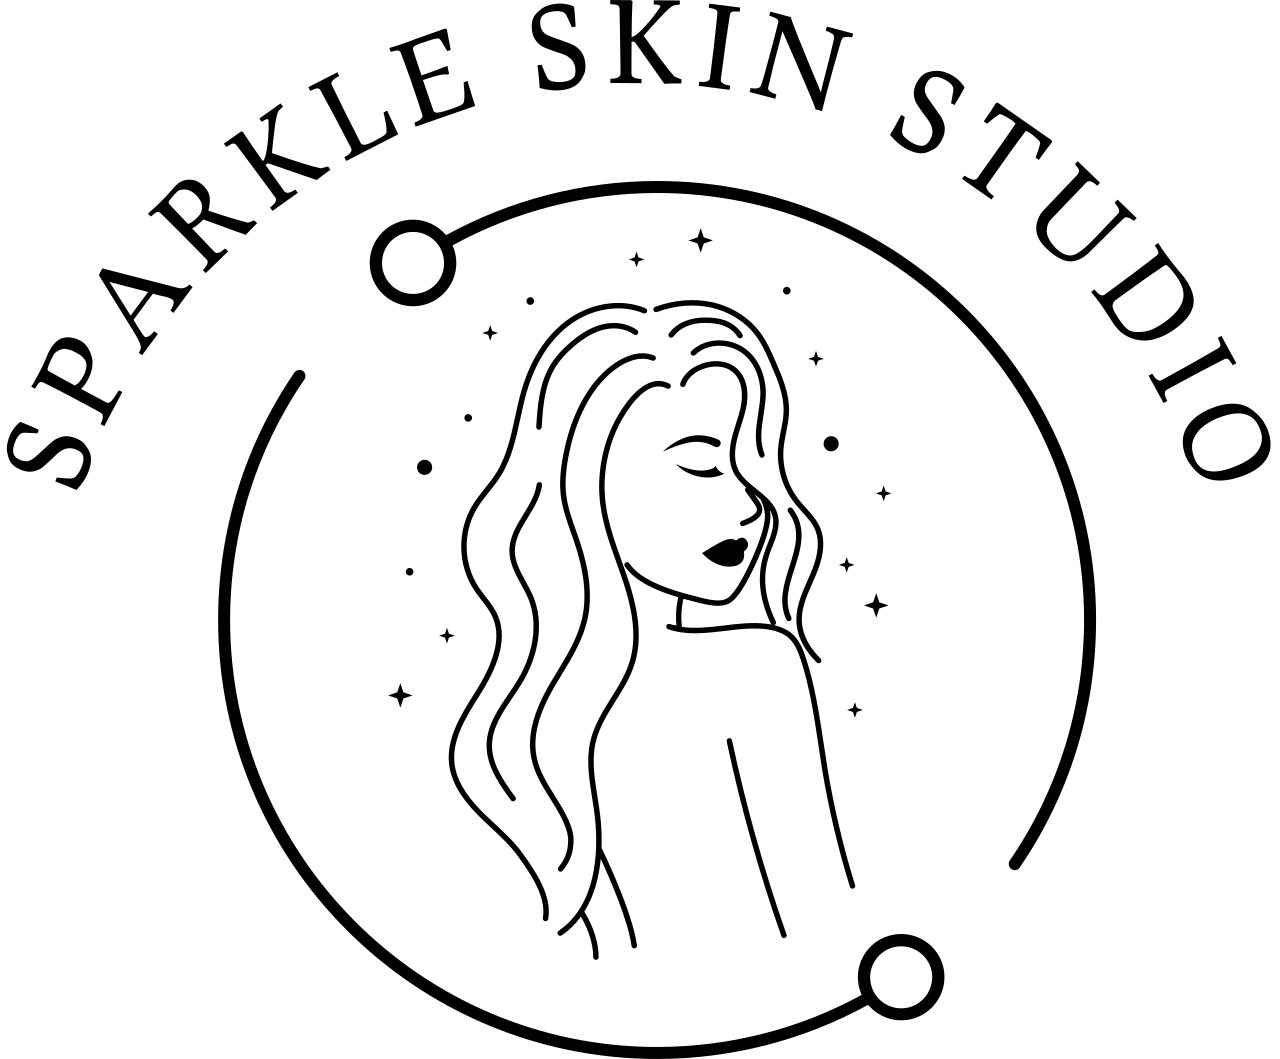 SPARKLE SKIN STUDIO's logo